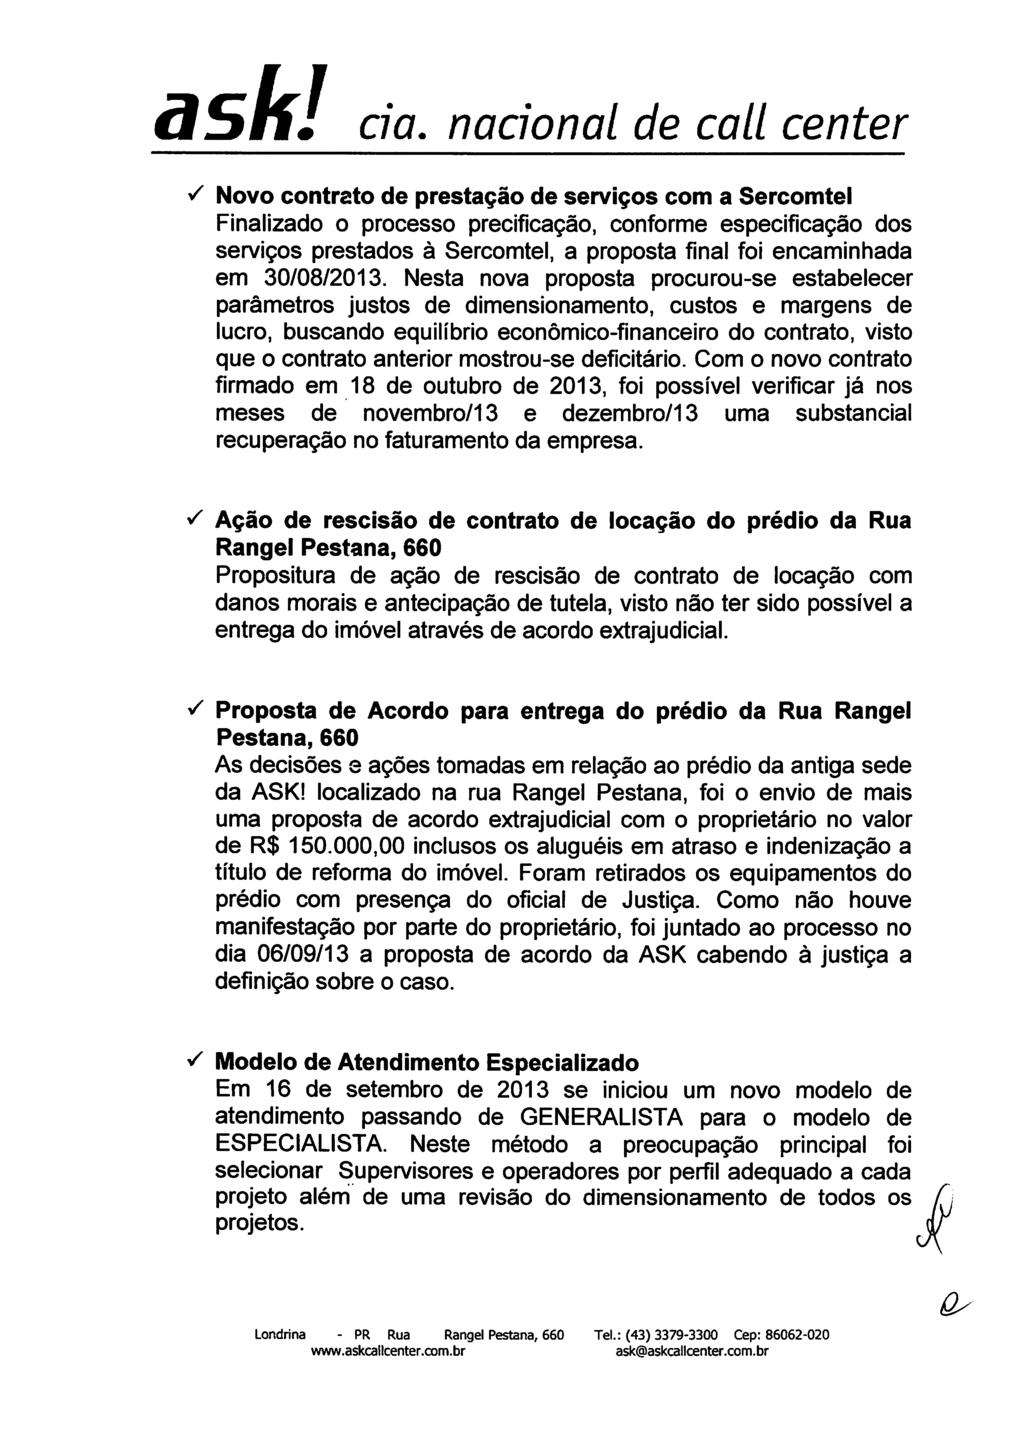 S Novo contrato de pretação de erviço com a Sercomtel Finalizado o proceo precificação, conforme epecificação do erviço pretado à Sercomtel, a propota final foi encaminhada em 30/08/2013.